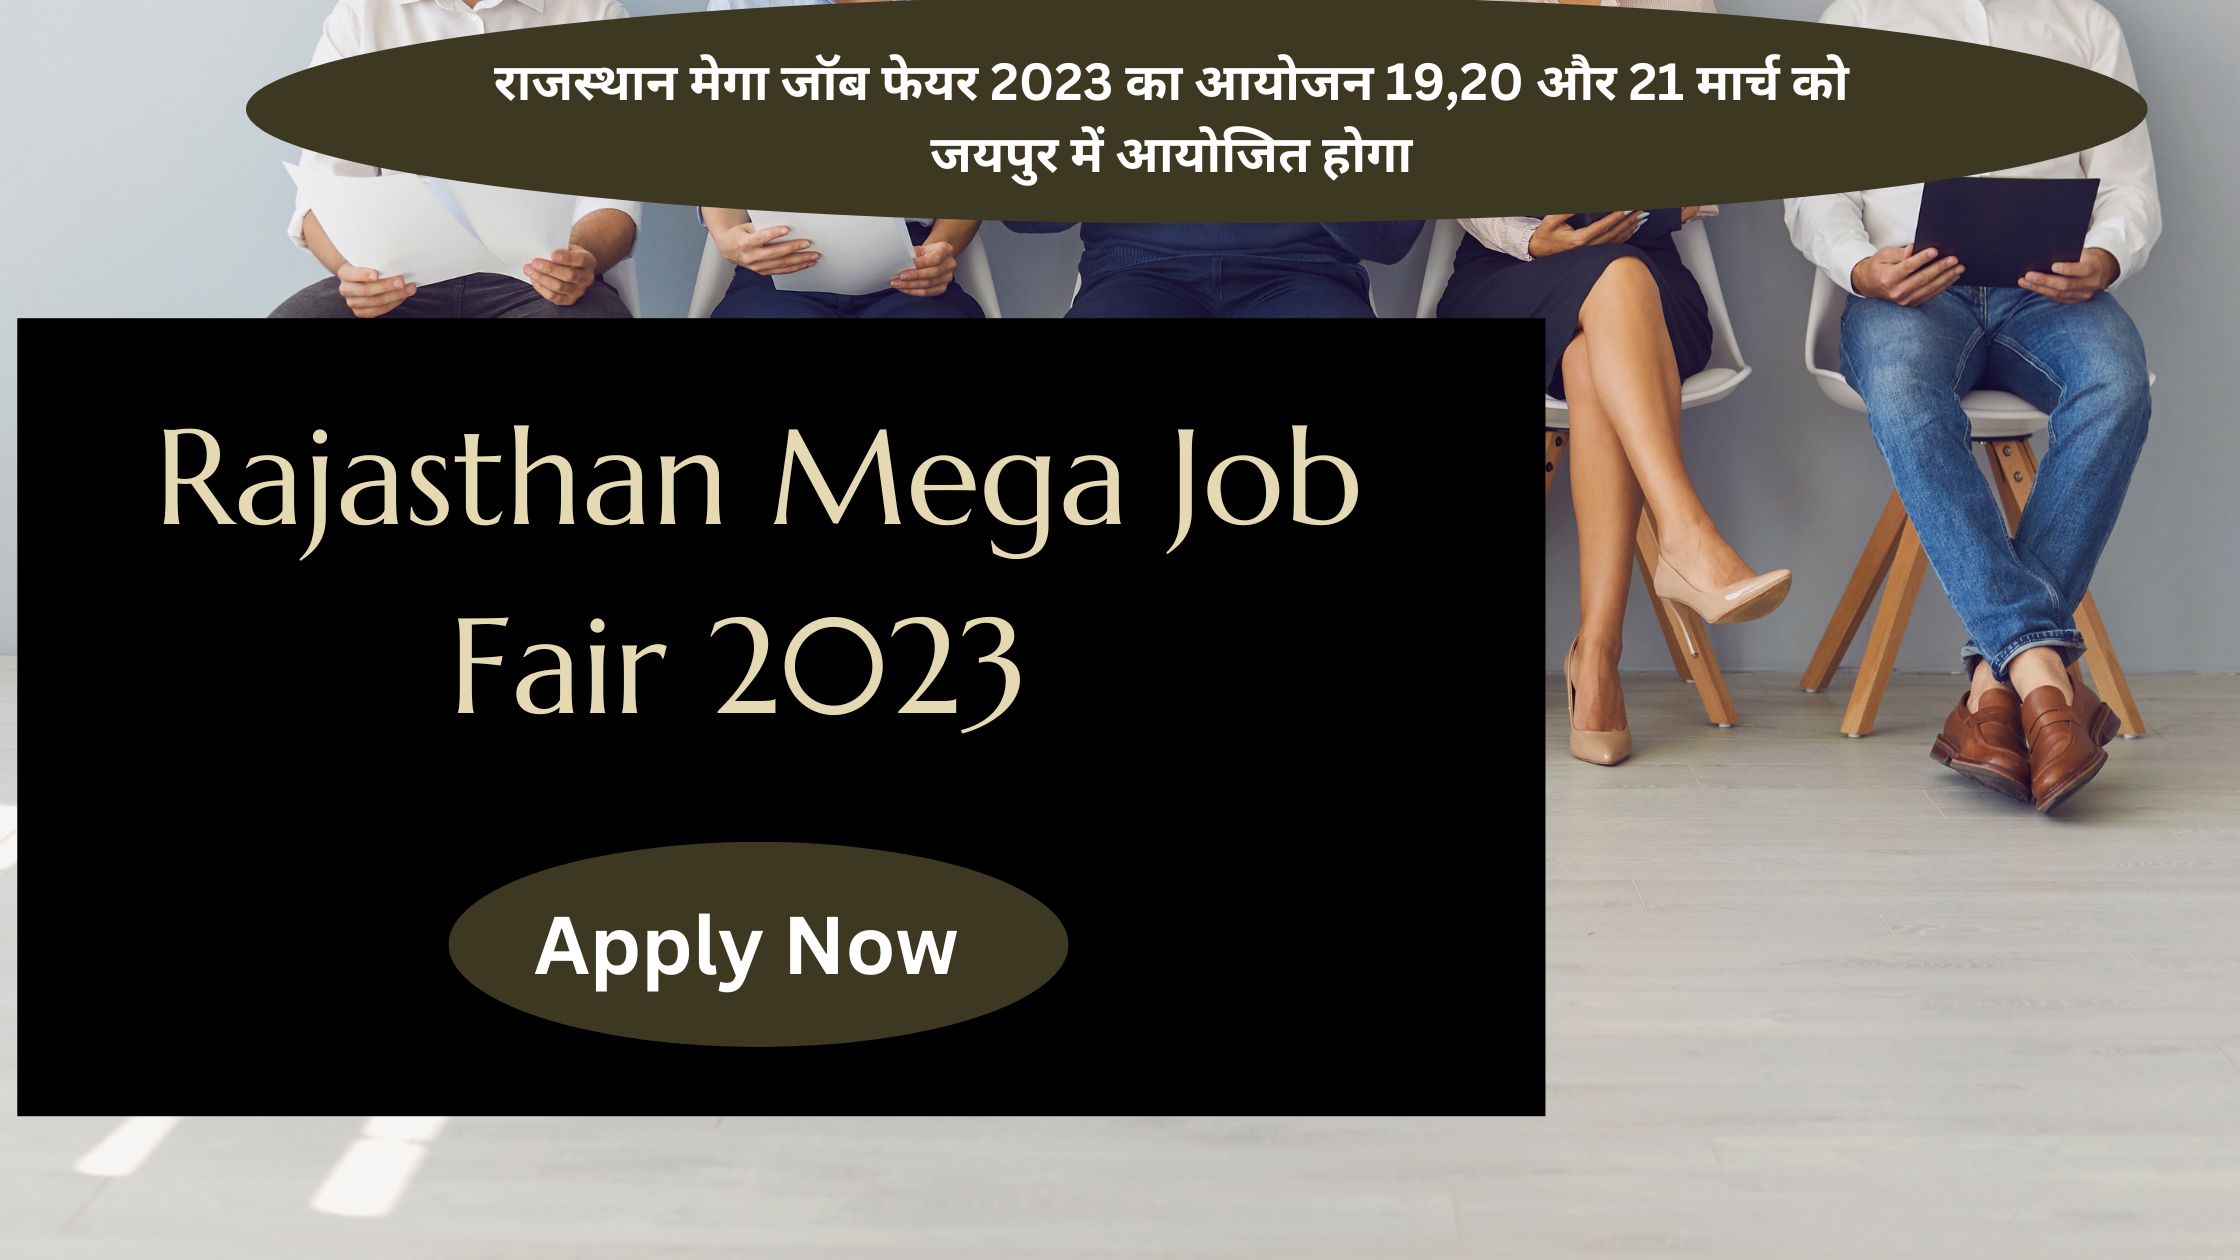 Rajasthan Mega Job Fair 2023 